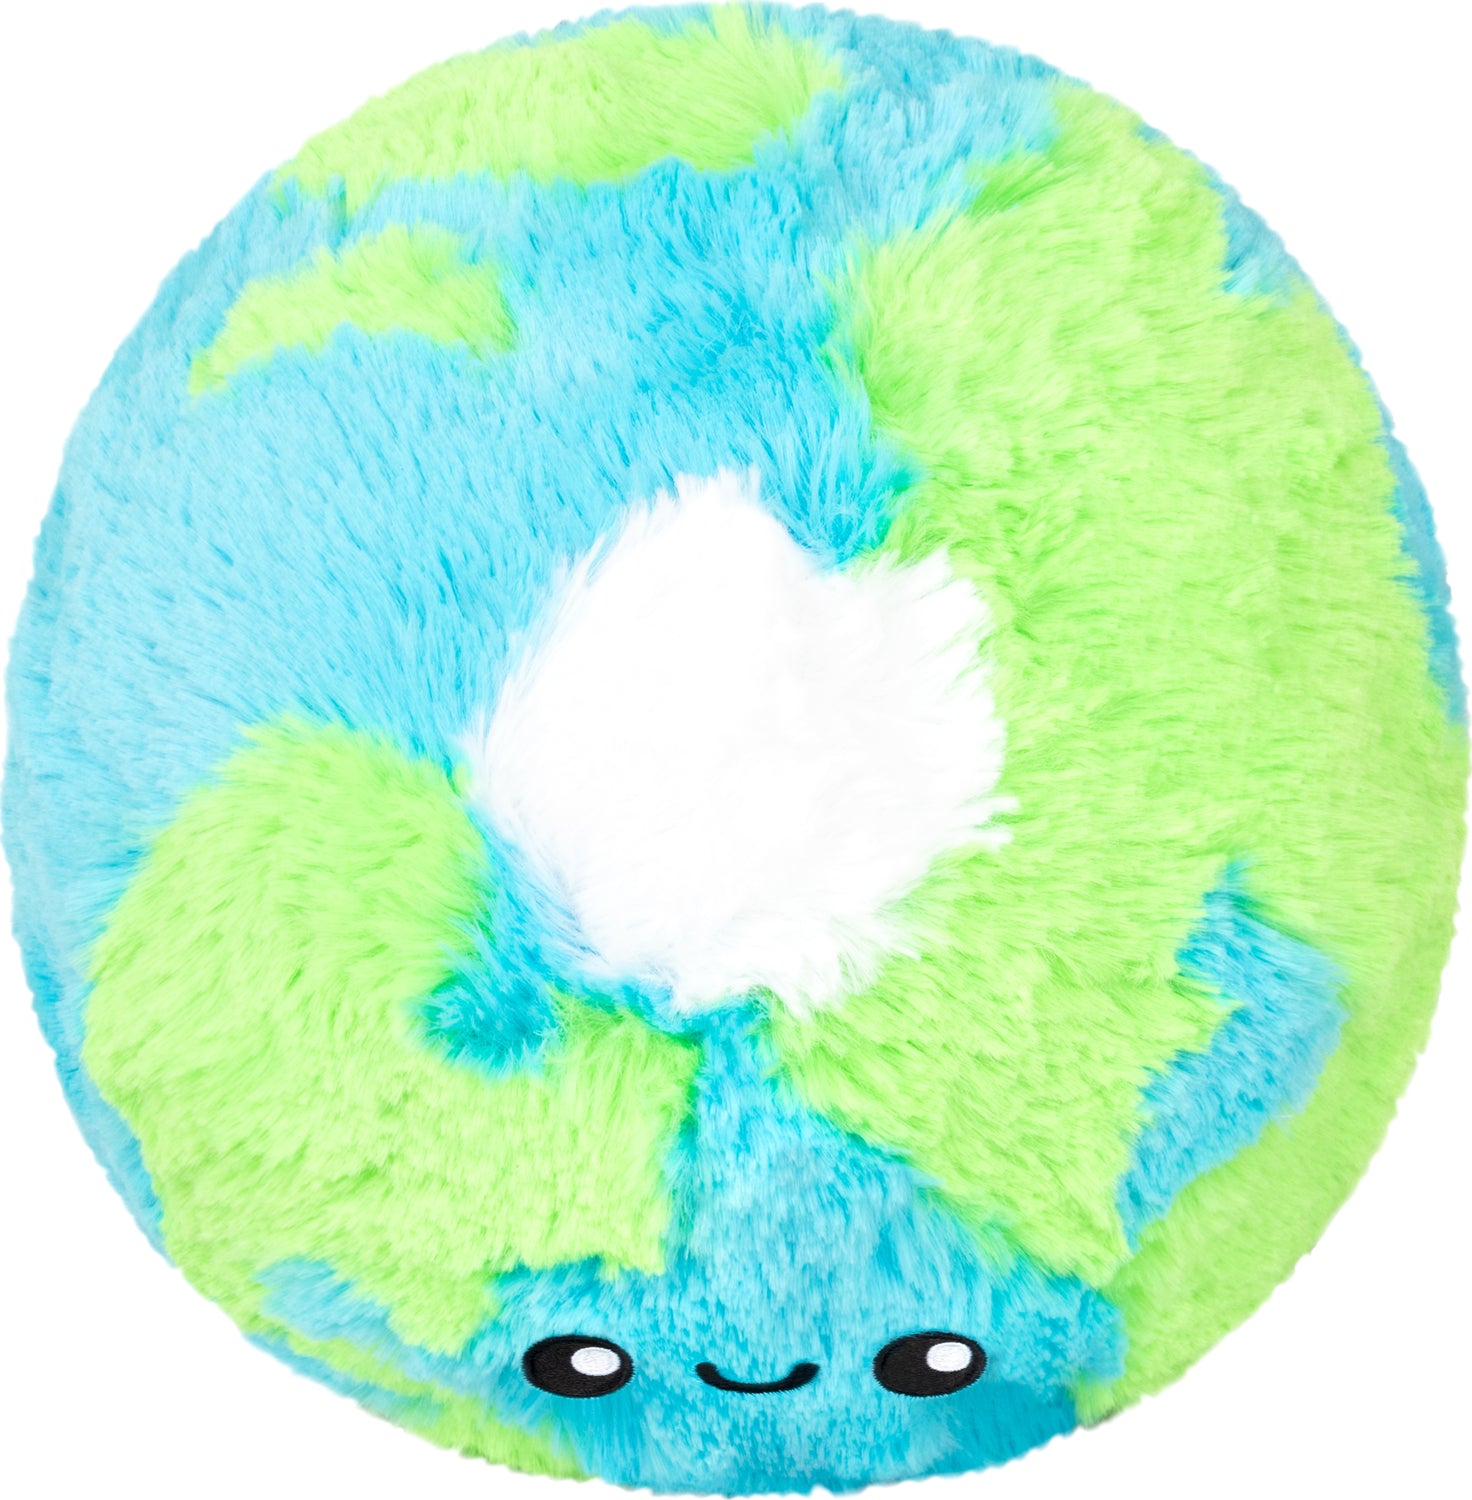 Mini Squishable Earth